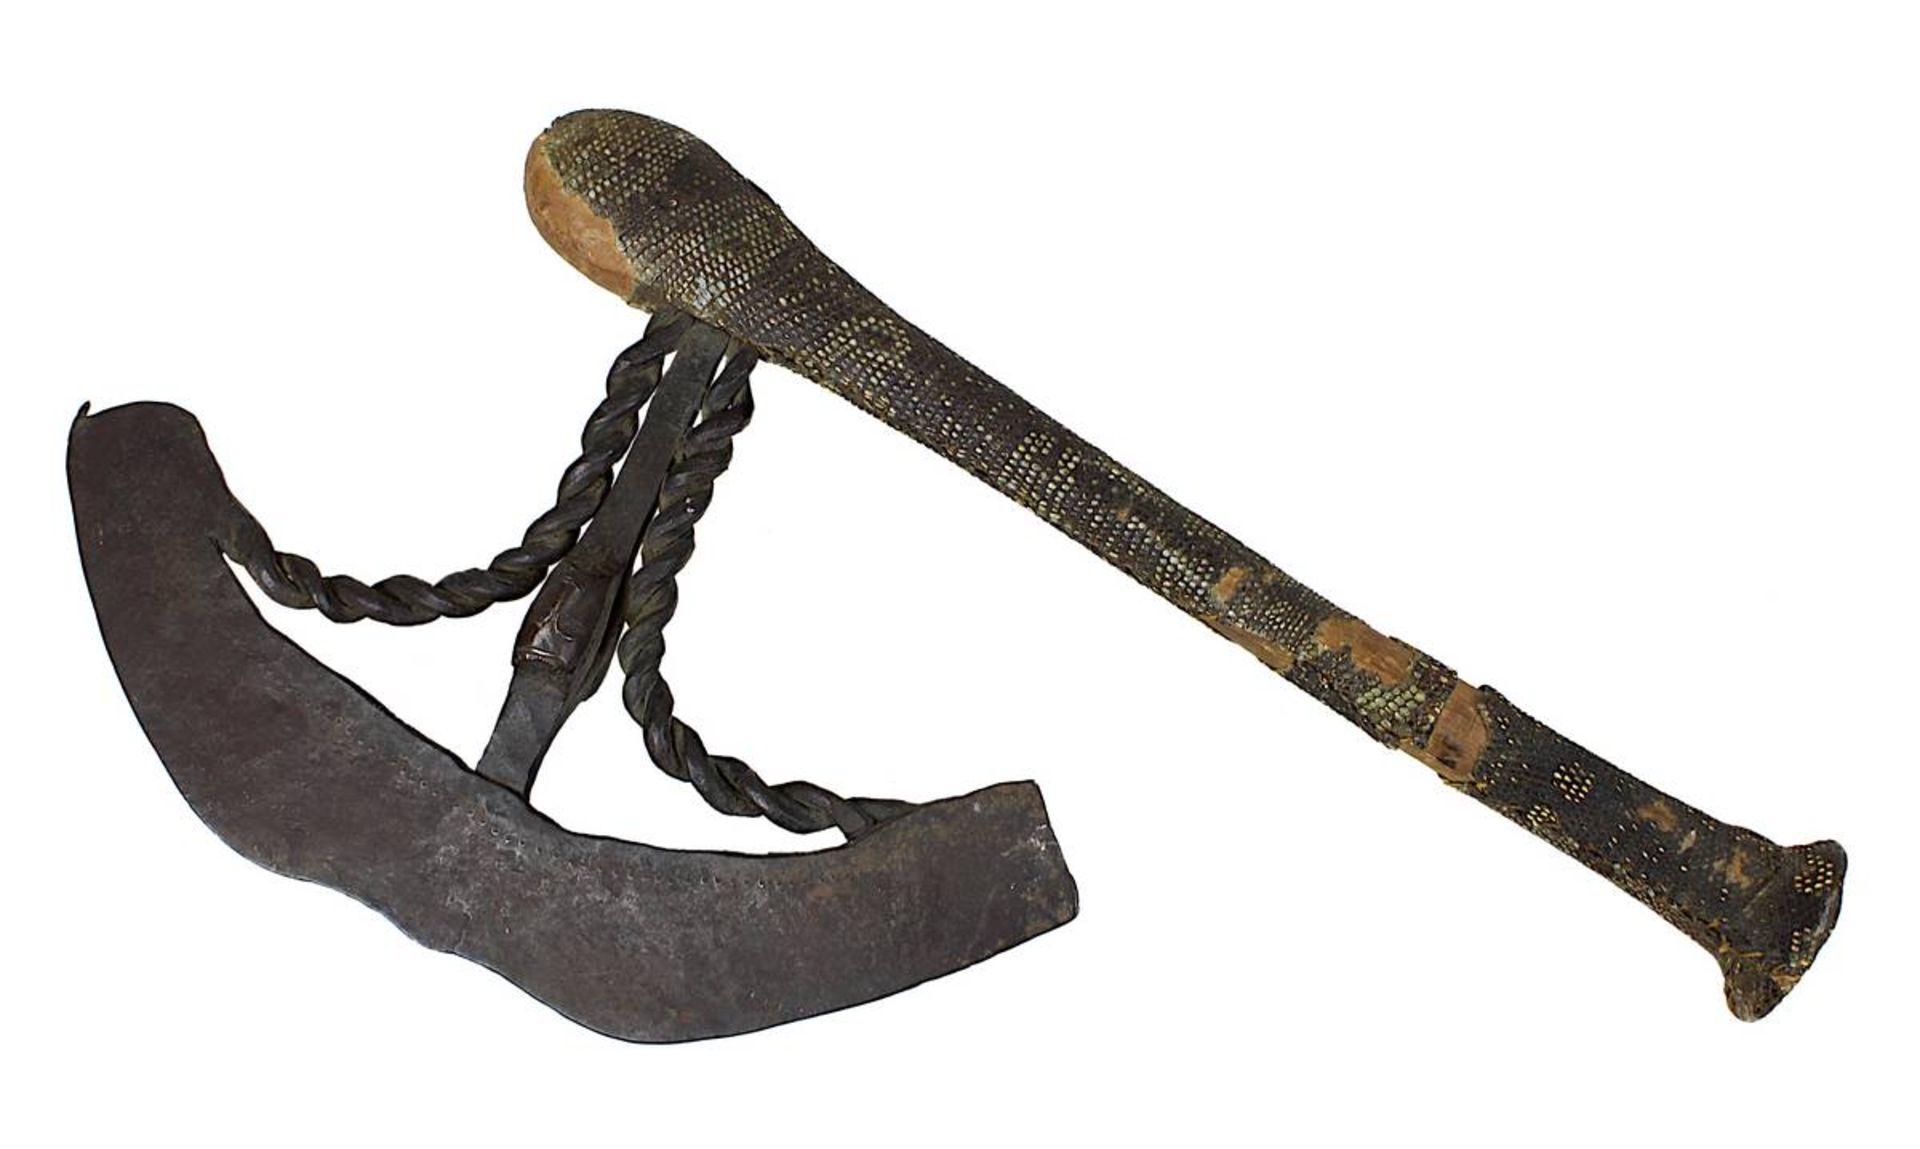 Zeremonialaxt der Songye, Kongo, keulenförmiger Holzgriff, mit Schlangenhaut bezogen, Klinge aus